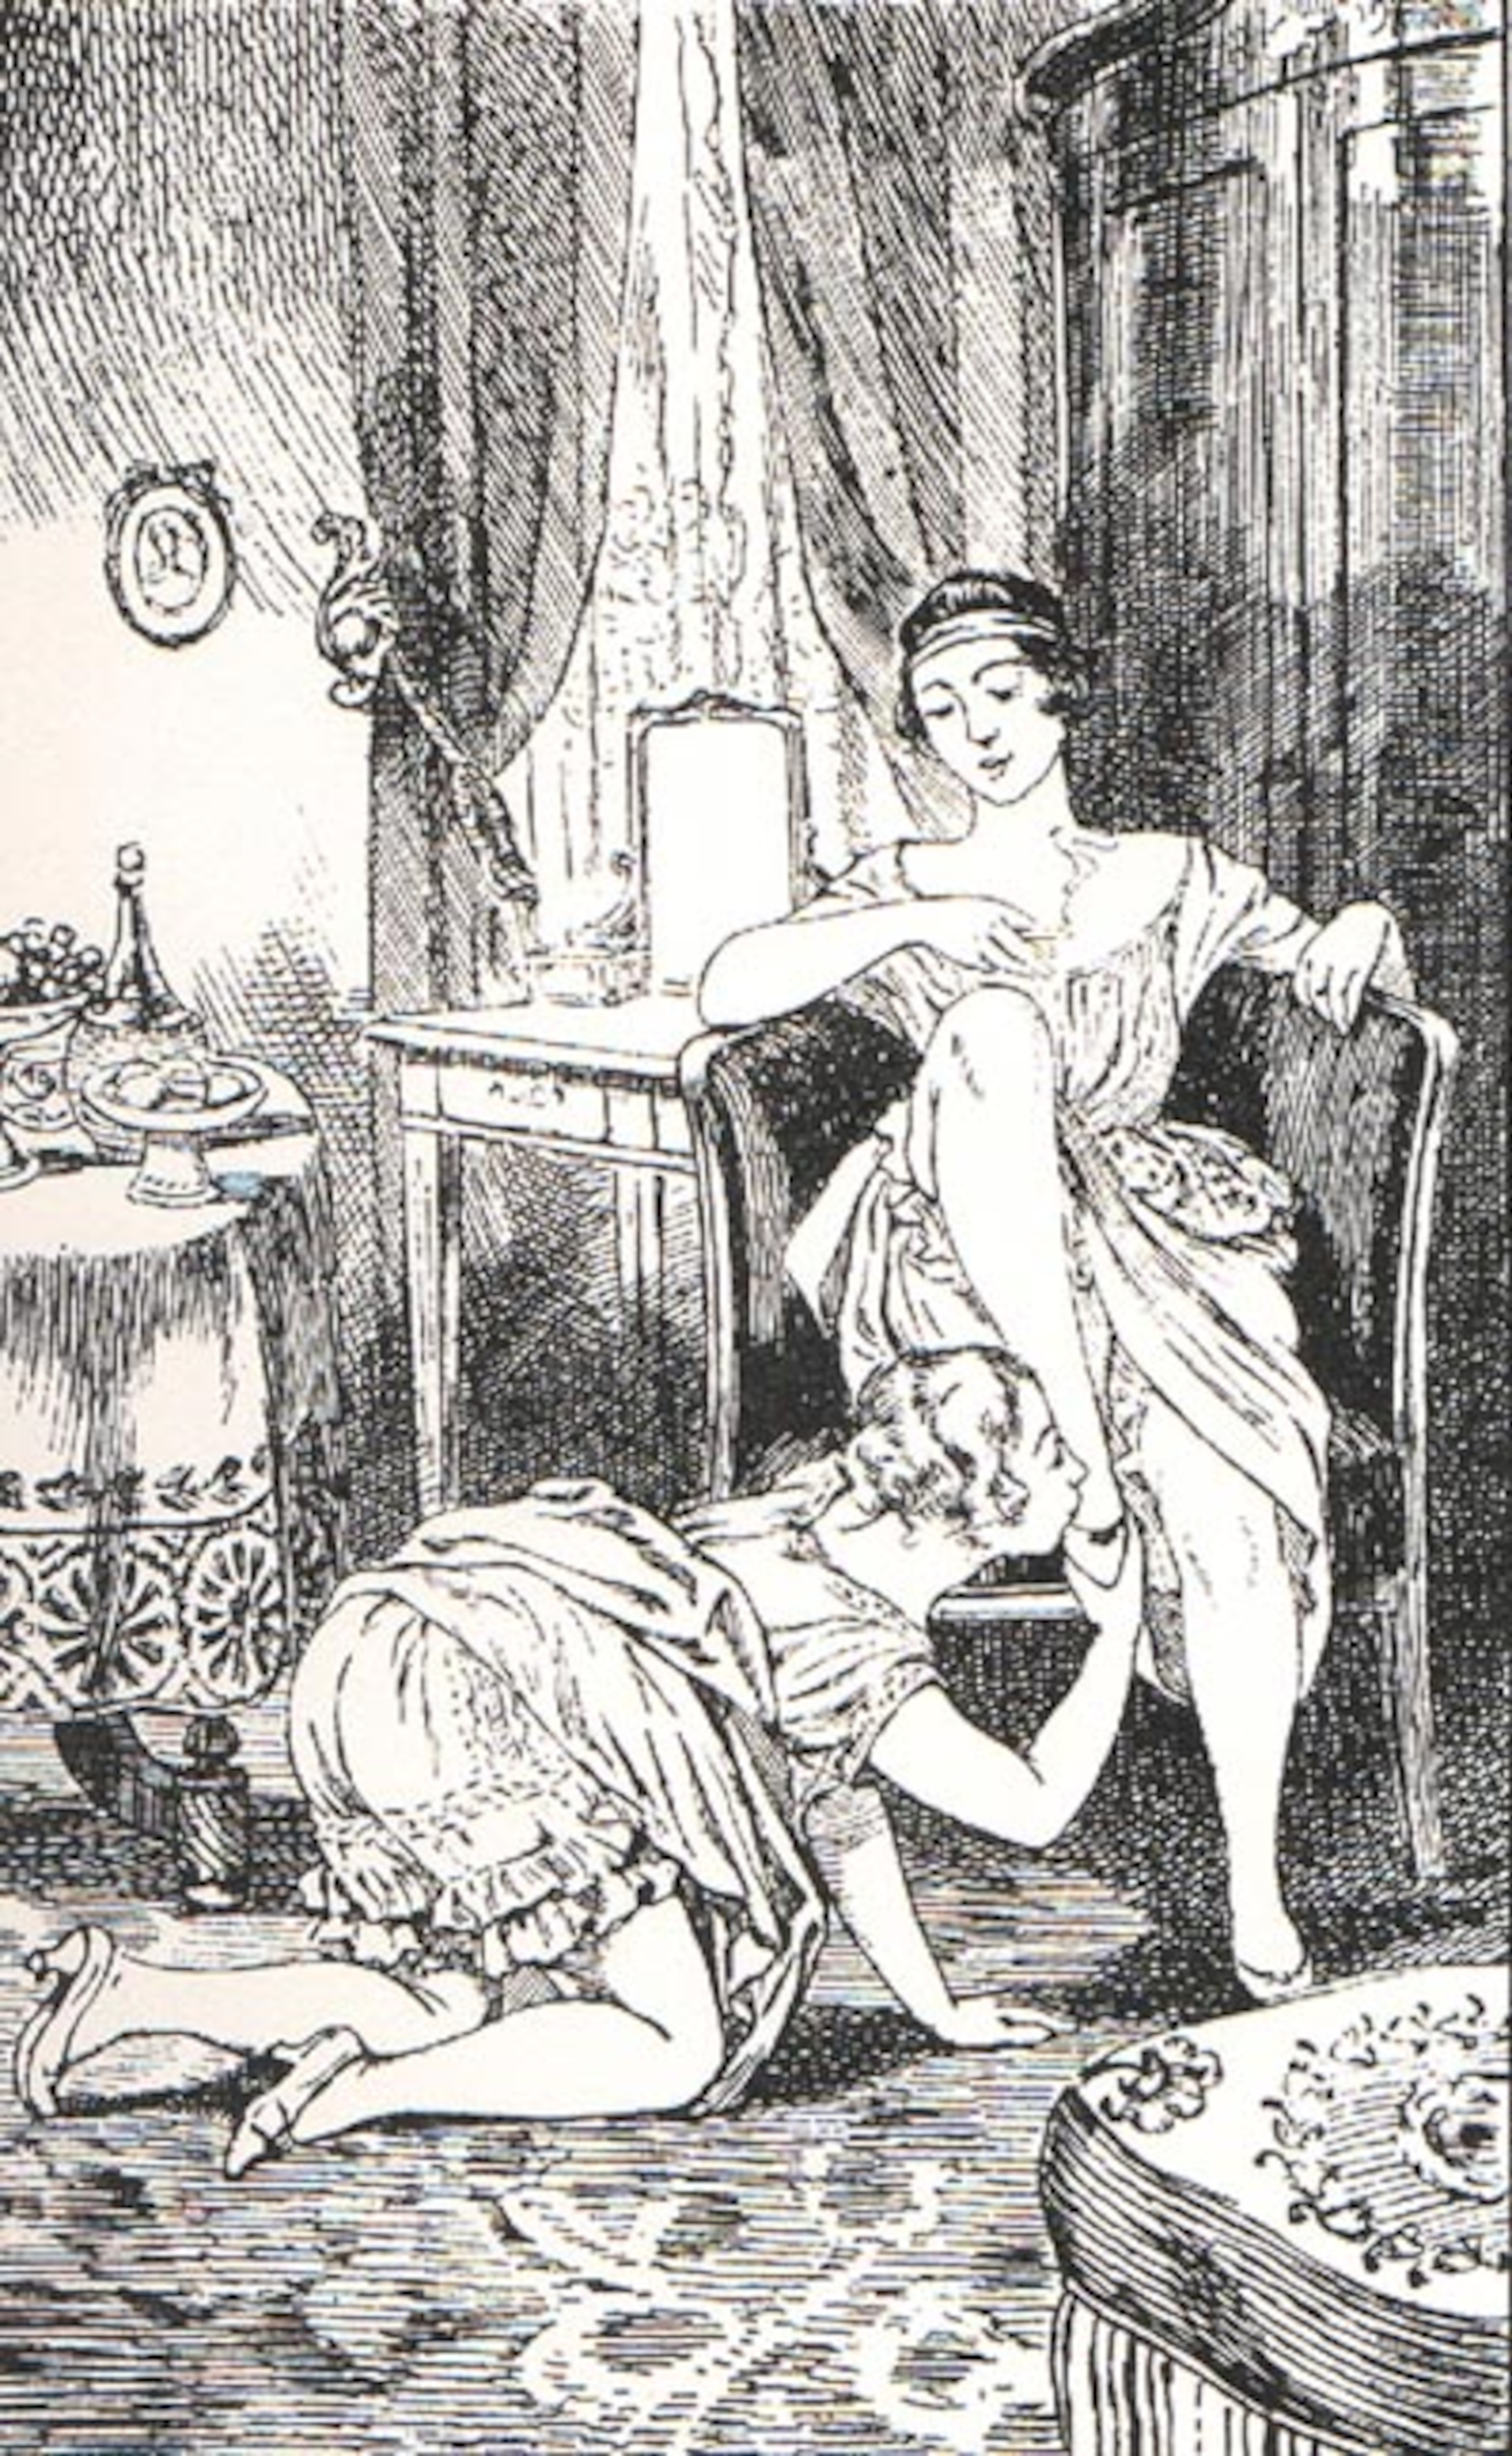 Un dessin en noir et blanc datant des années 1920 montre une femme à genoux en train d'embrasser le pied d'une femme assise.